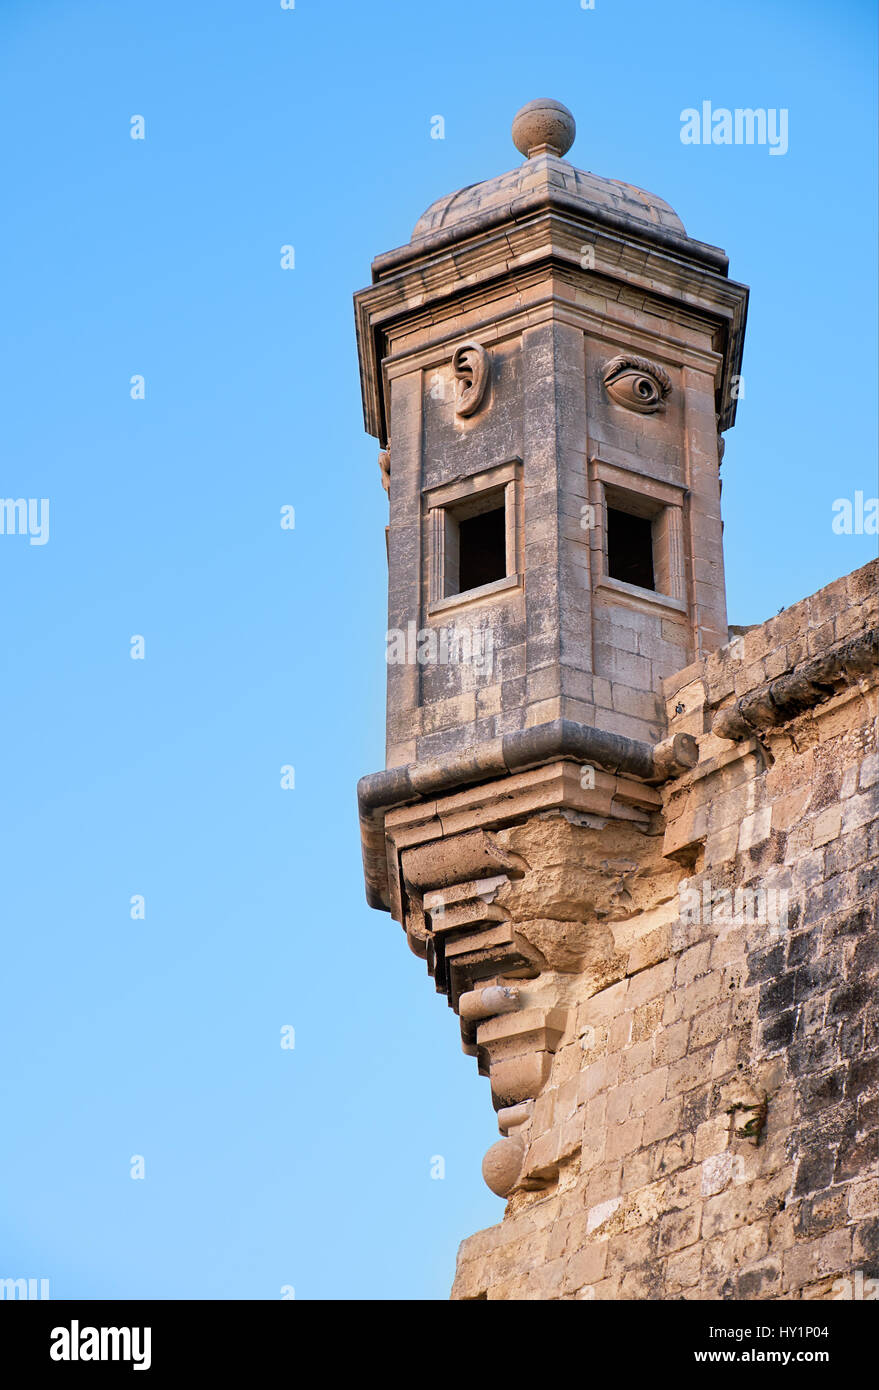 La torre de guardia Gardjola en el extremo de la península de Senglea bastión con símbolos esculpidos (ojos, orejas y nariz) que representa la tutela y respeto Foto de stock